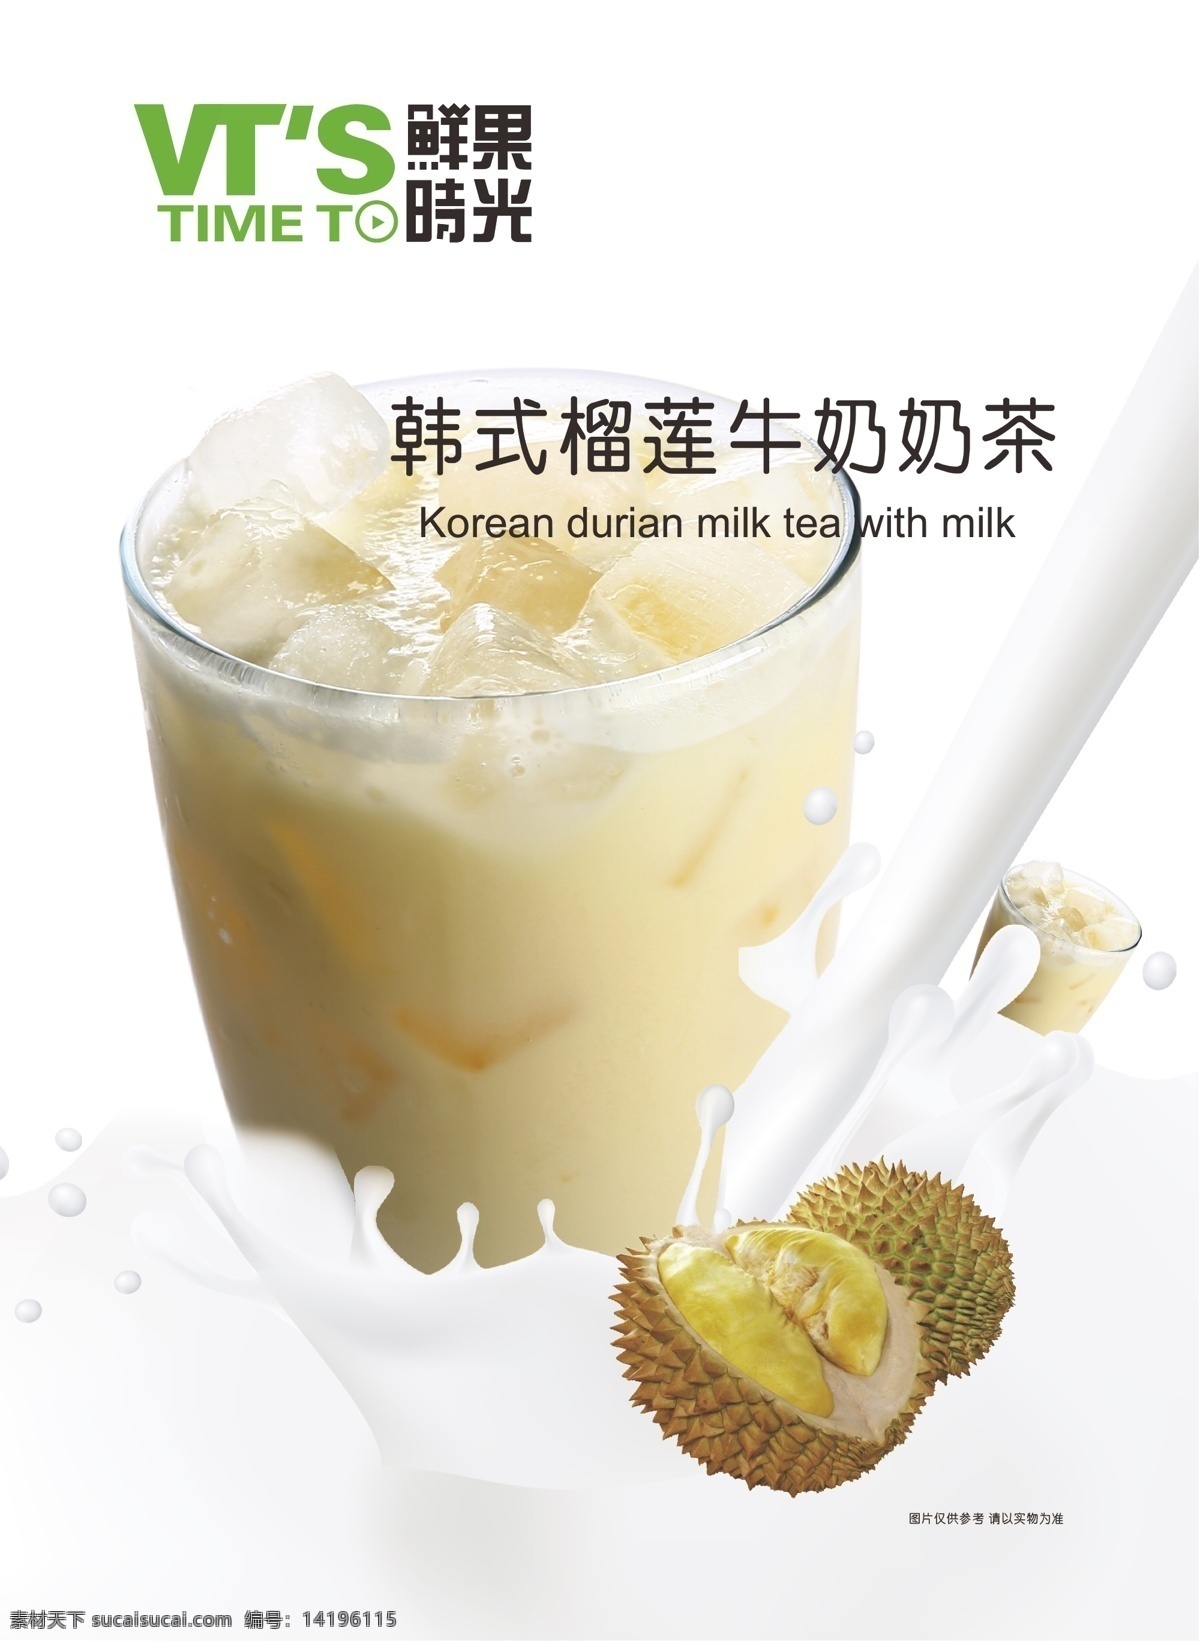 奶茶 促销 海报 促销海报 韩式 榴莲 鲜果时光 鲜牛奶 飞溅牛奶 原创设计 原创海报